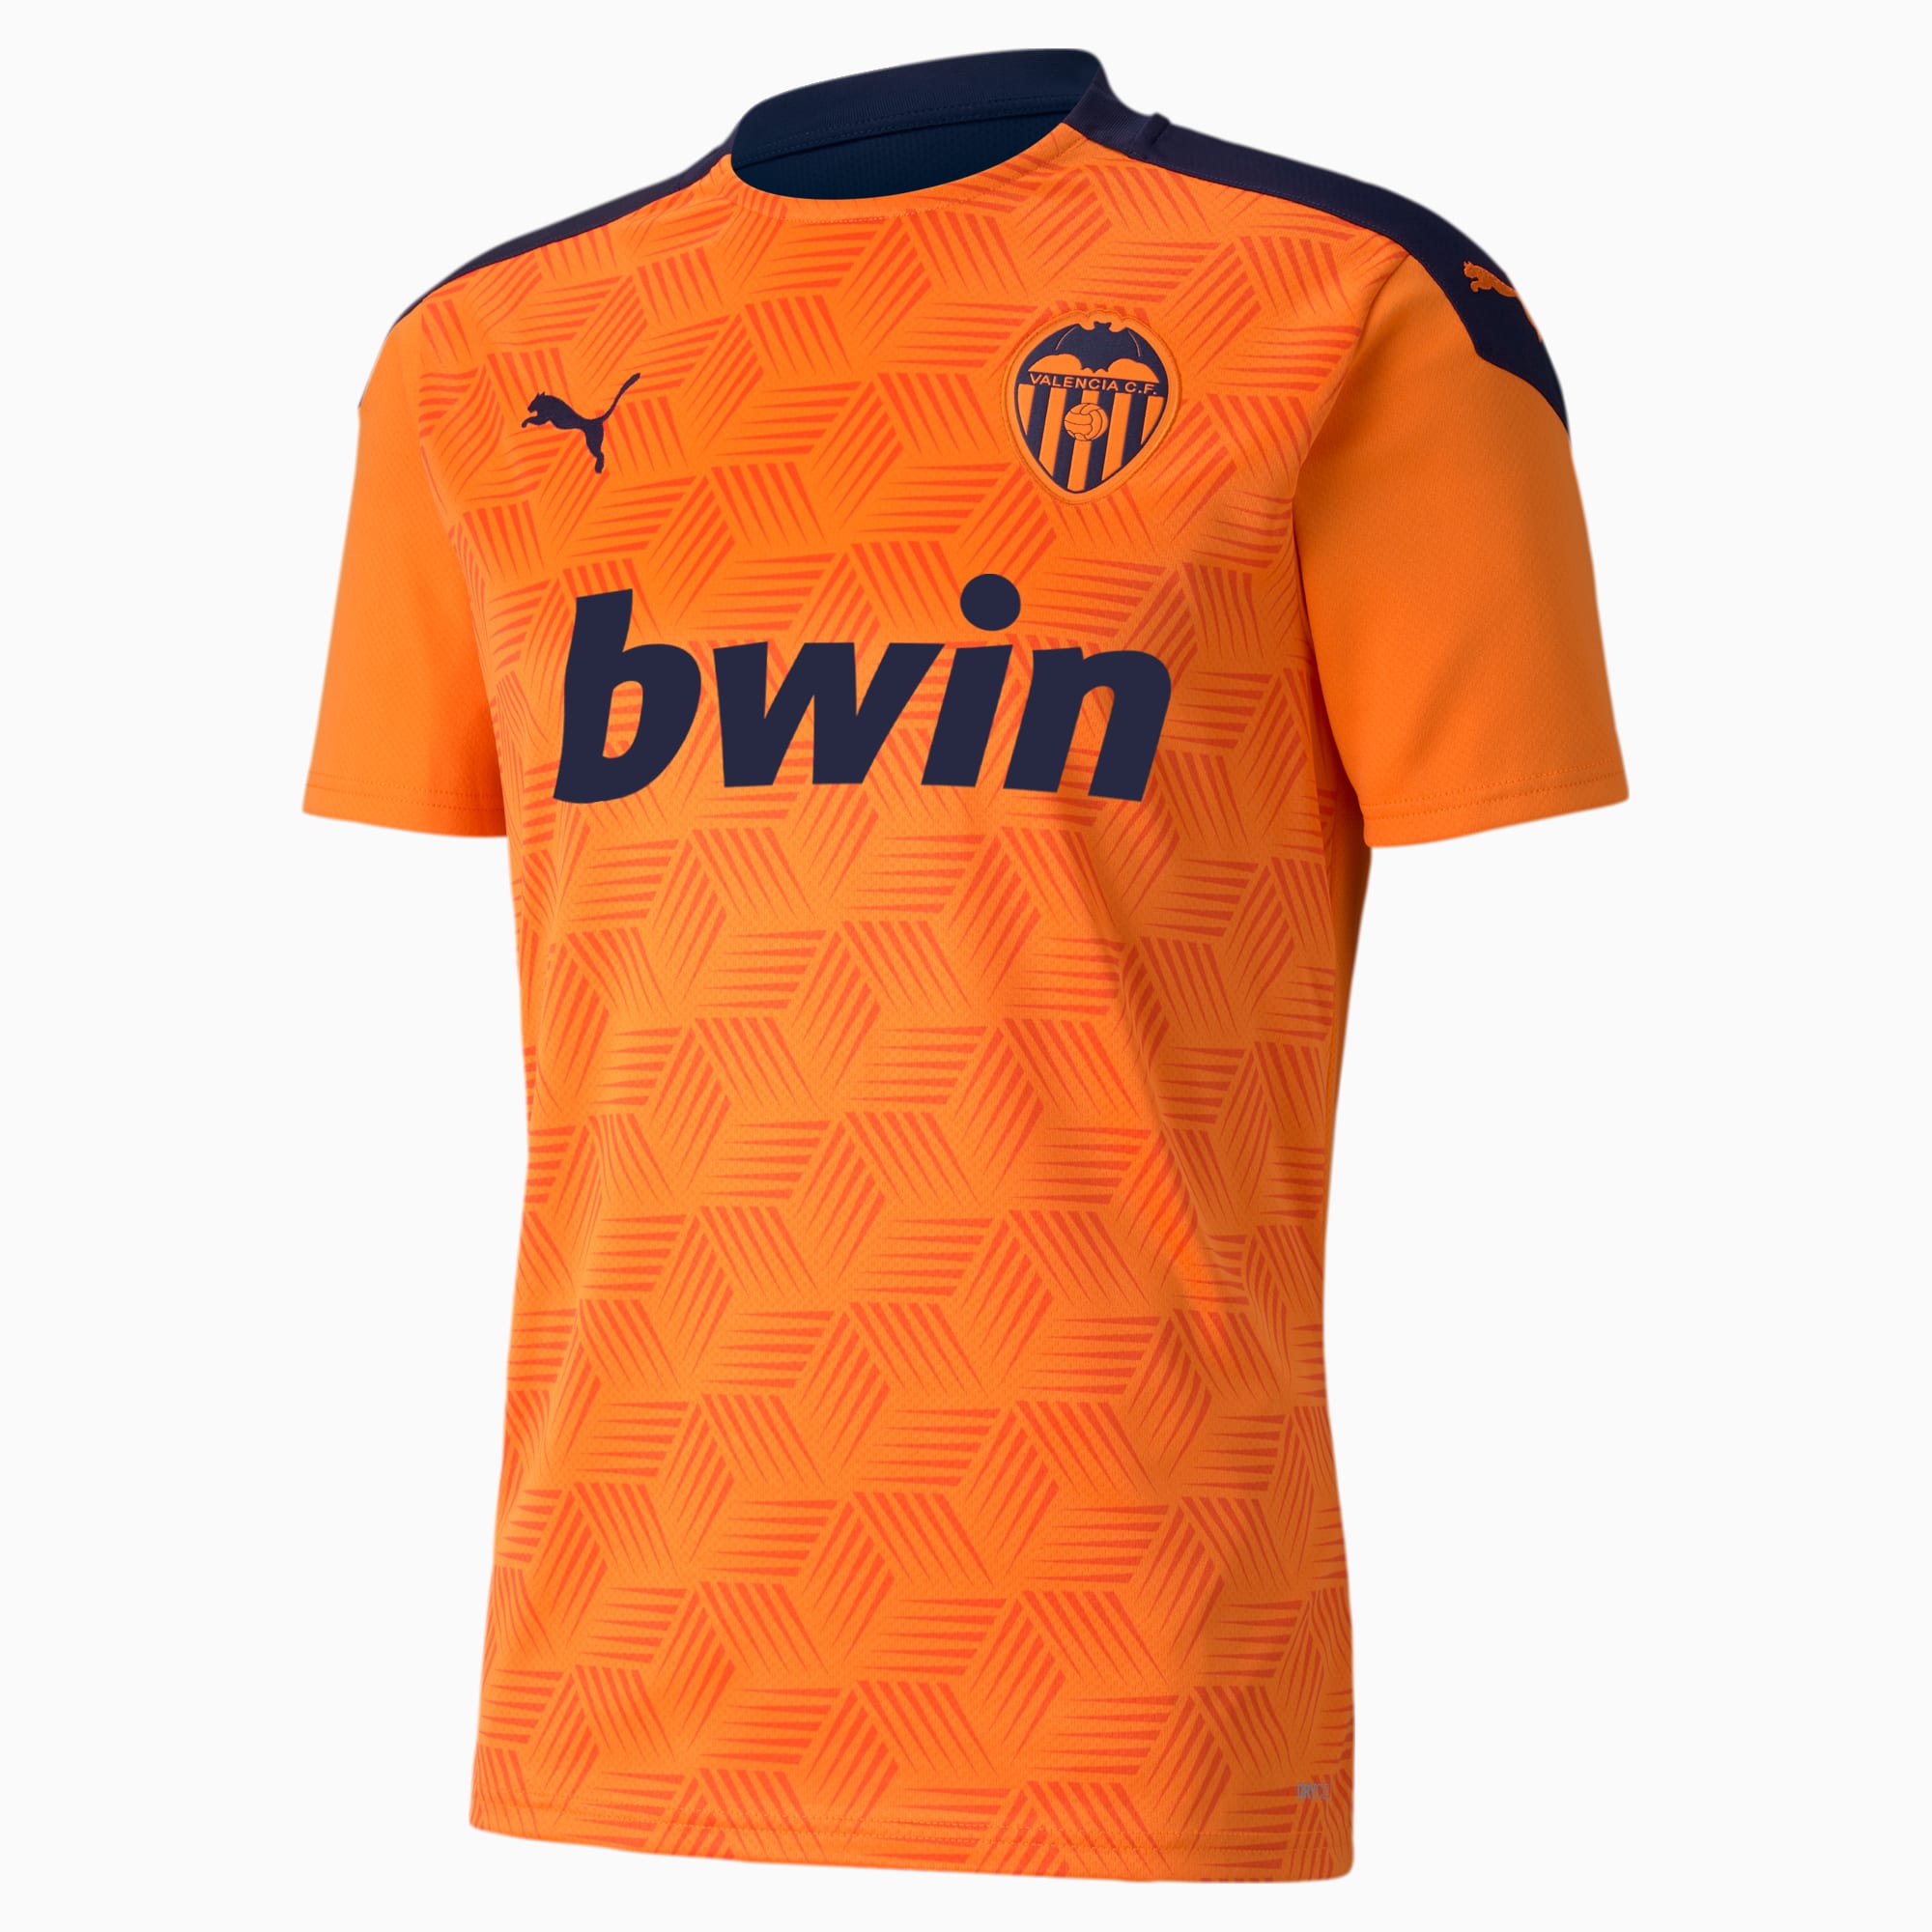 Valencia CF badvcf Flag, White/Orange, One Size